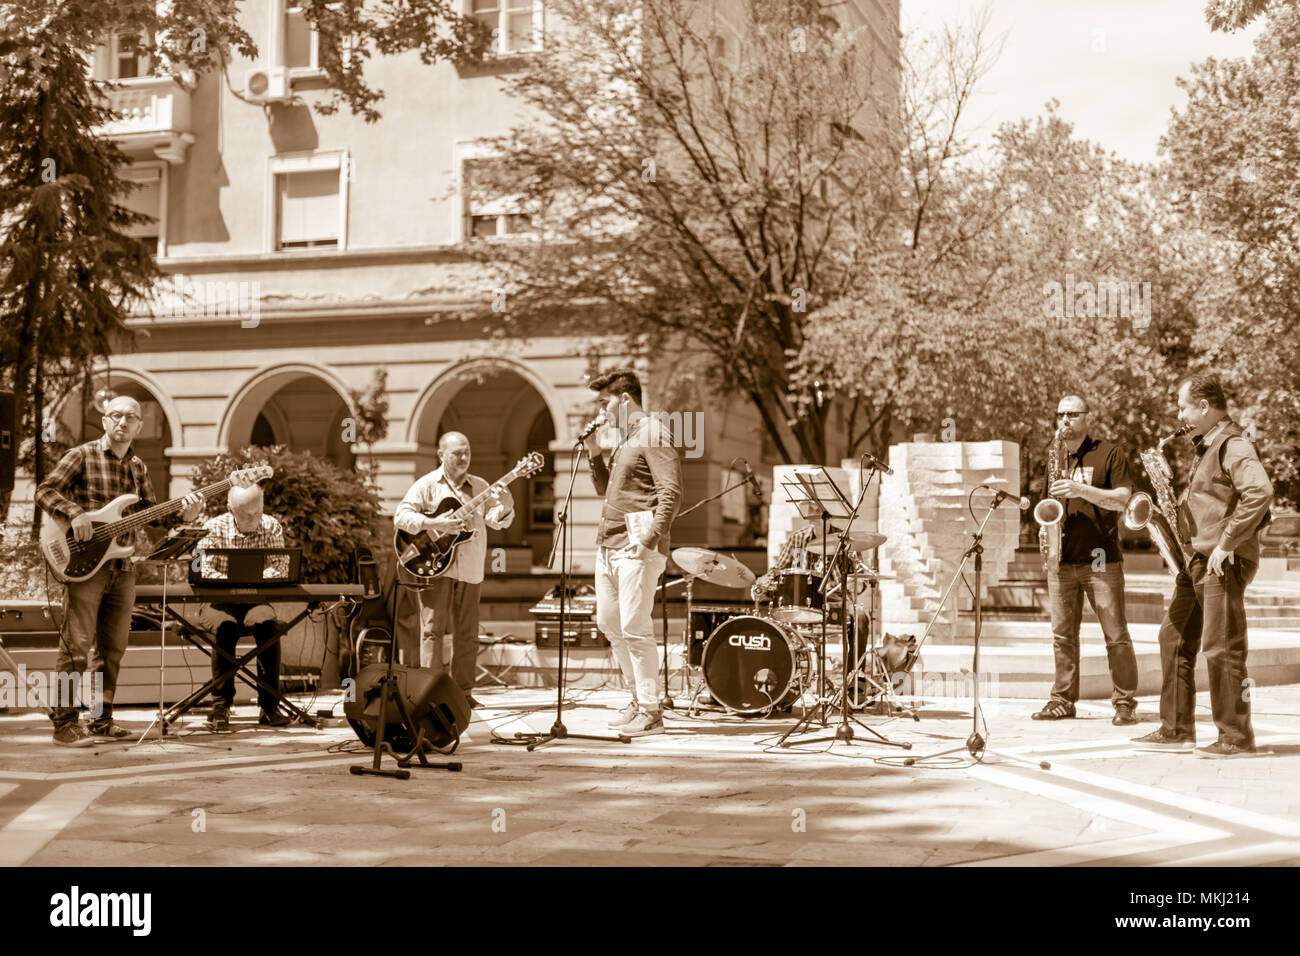 DIMITROVGRAD, Bulgarien - 30. APRIL 2018: Jazz Band von sieben Musikern spielt Musik Standards live im geöffneten an Straße Konzert Ereignis zu Inte gewidmet Stockfoto